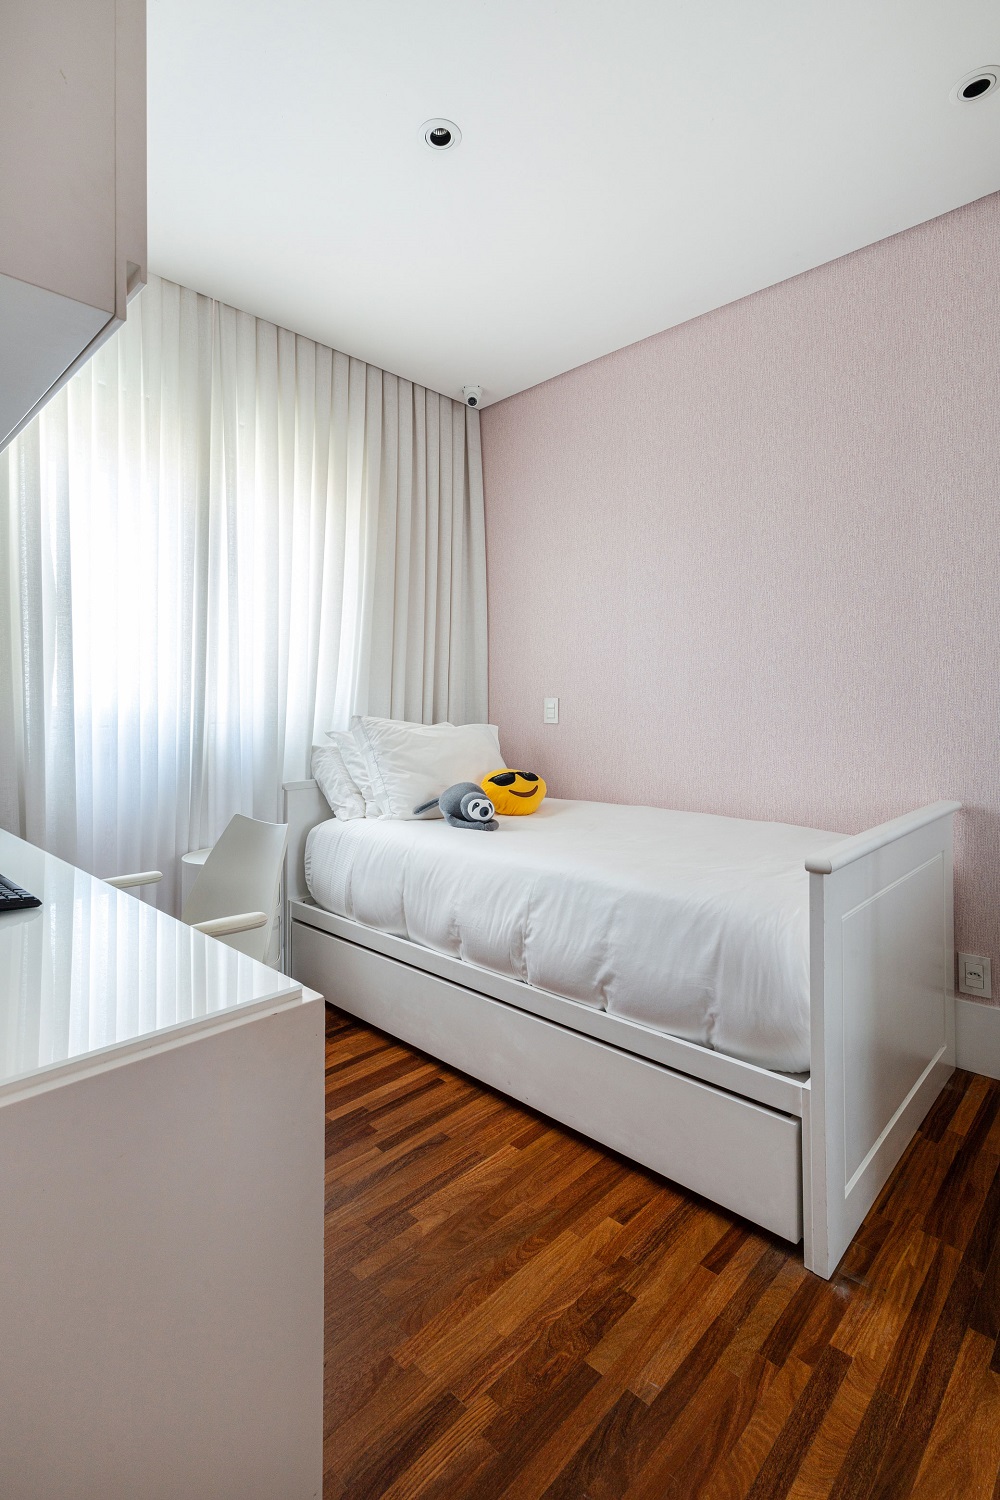 O papel de parede rosa claro traz um toque delicado para o quarto de menina